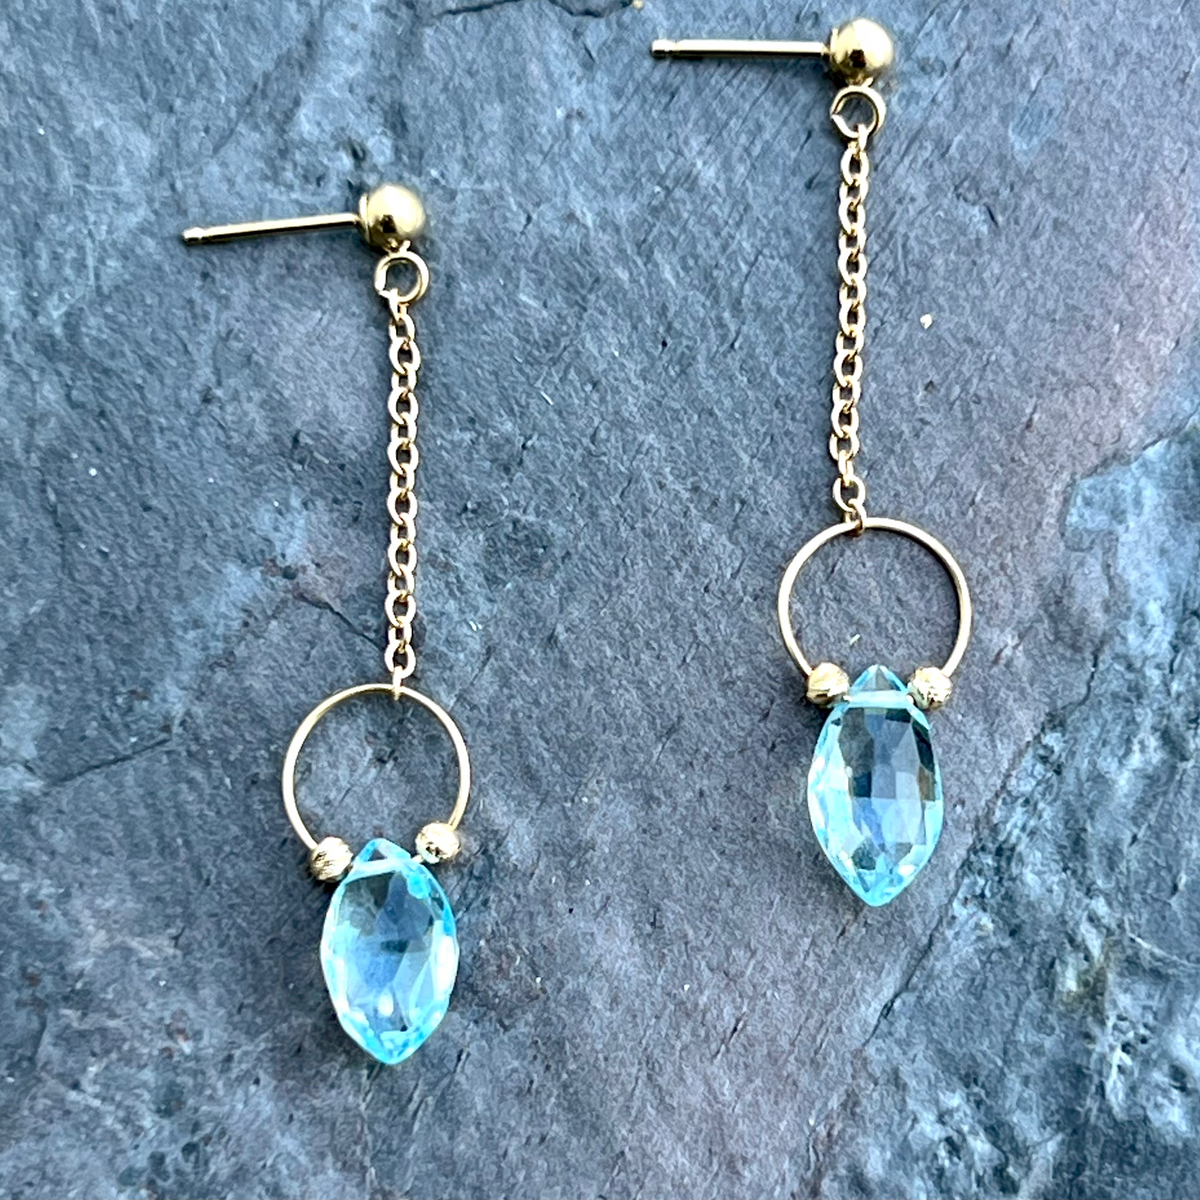 Blue topaz gemstone earrings in 14K gold by Garden of Silver in Westhampton Beach. www.gardenofsilver.com